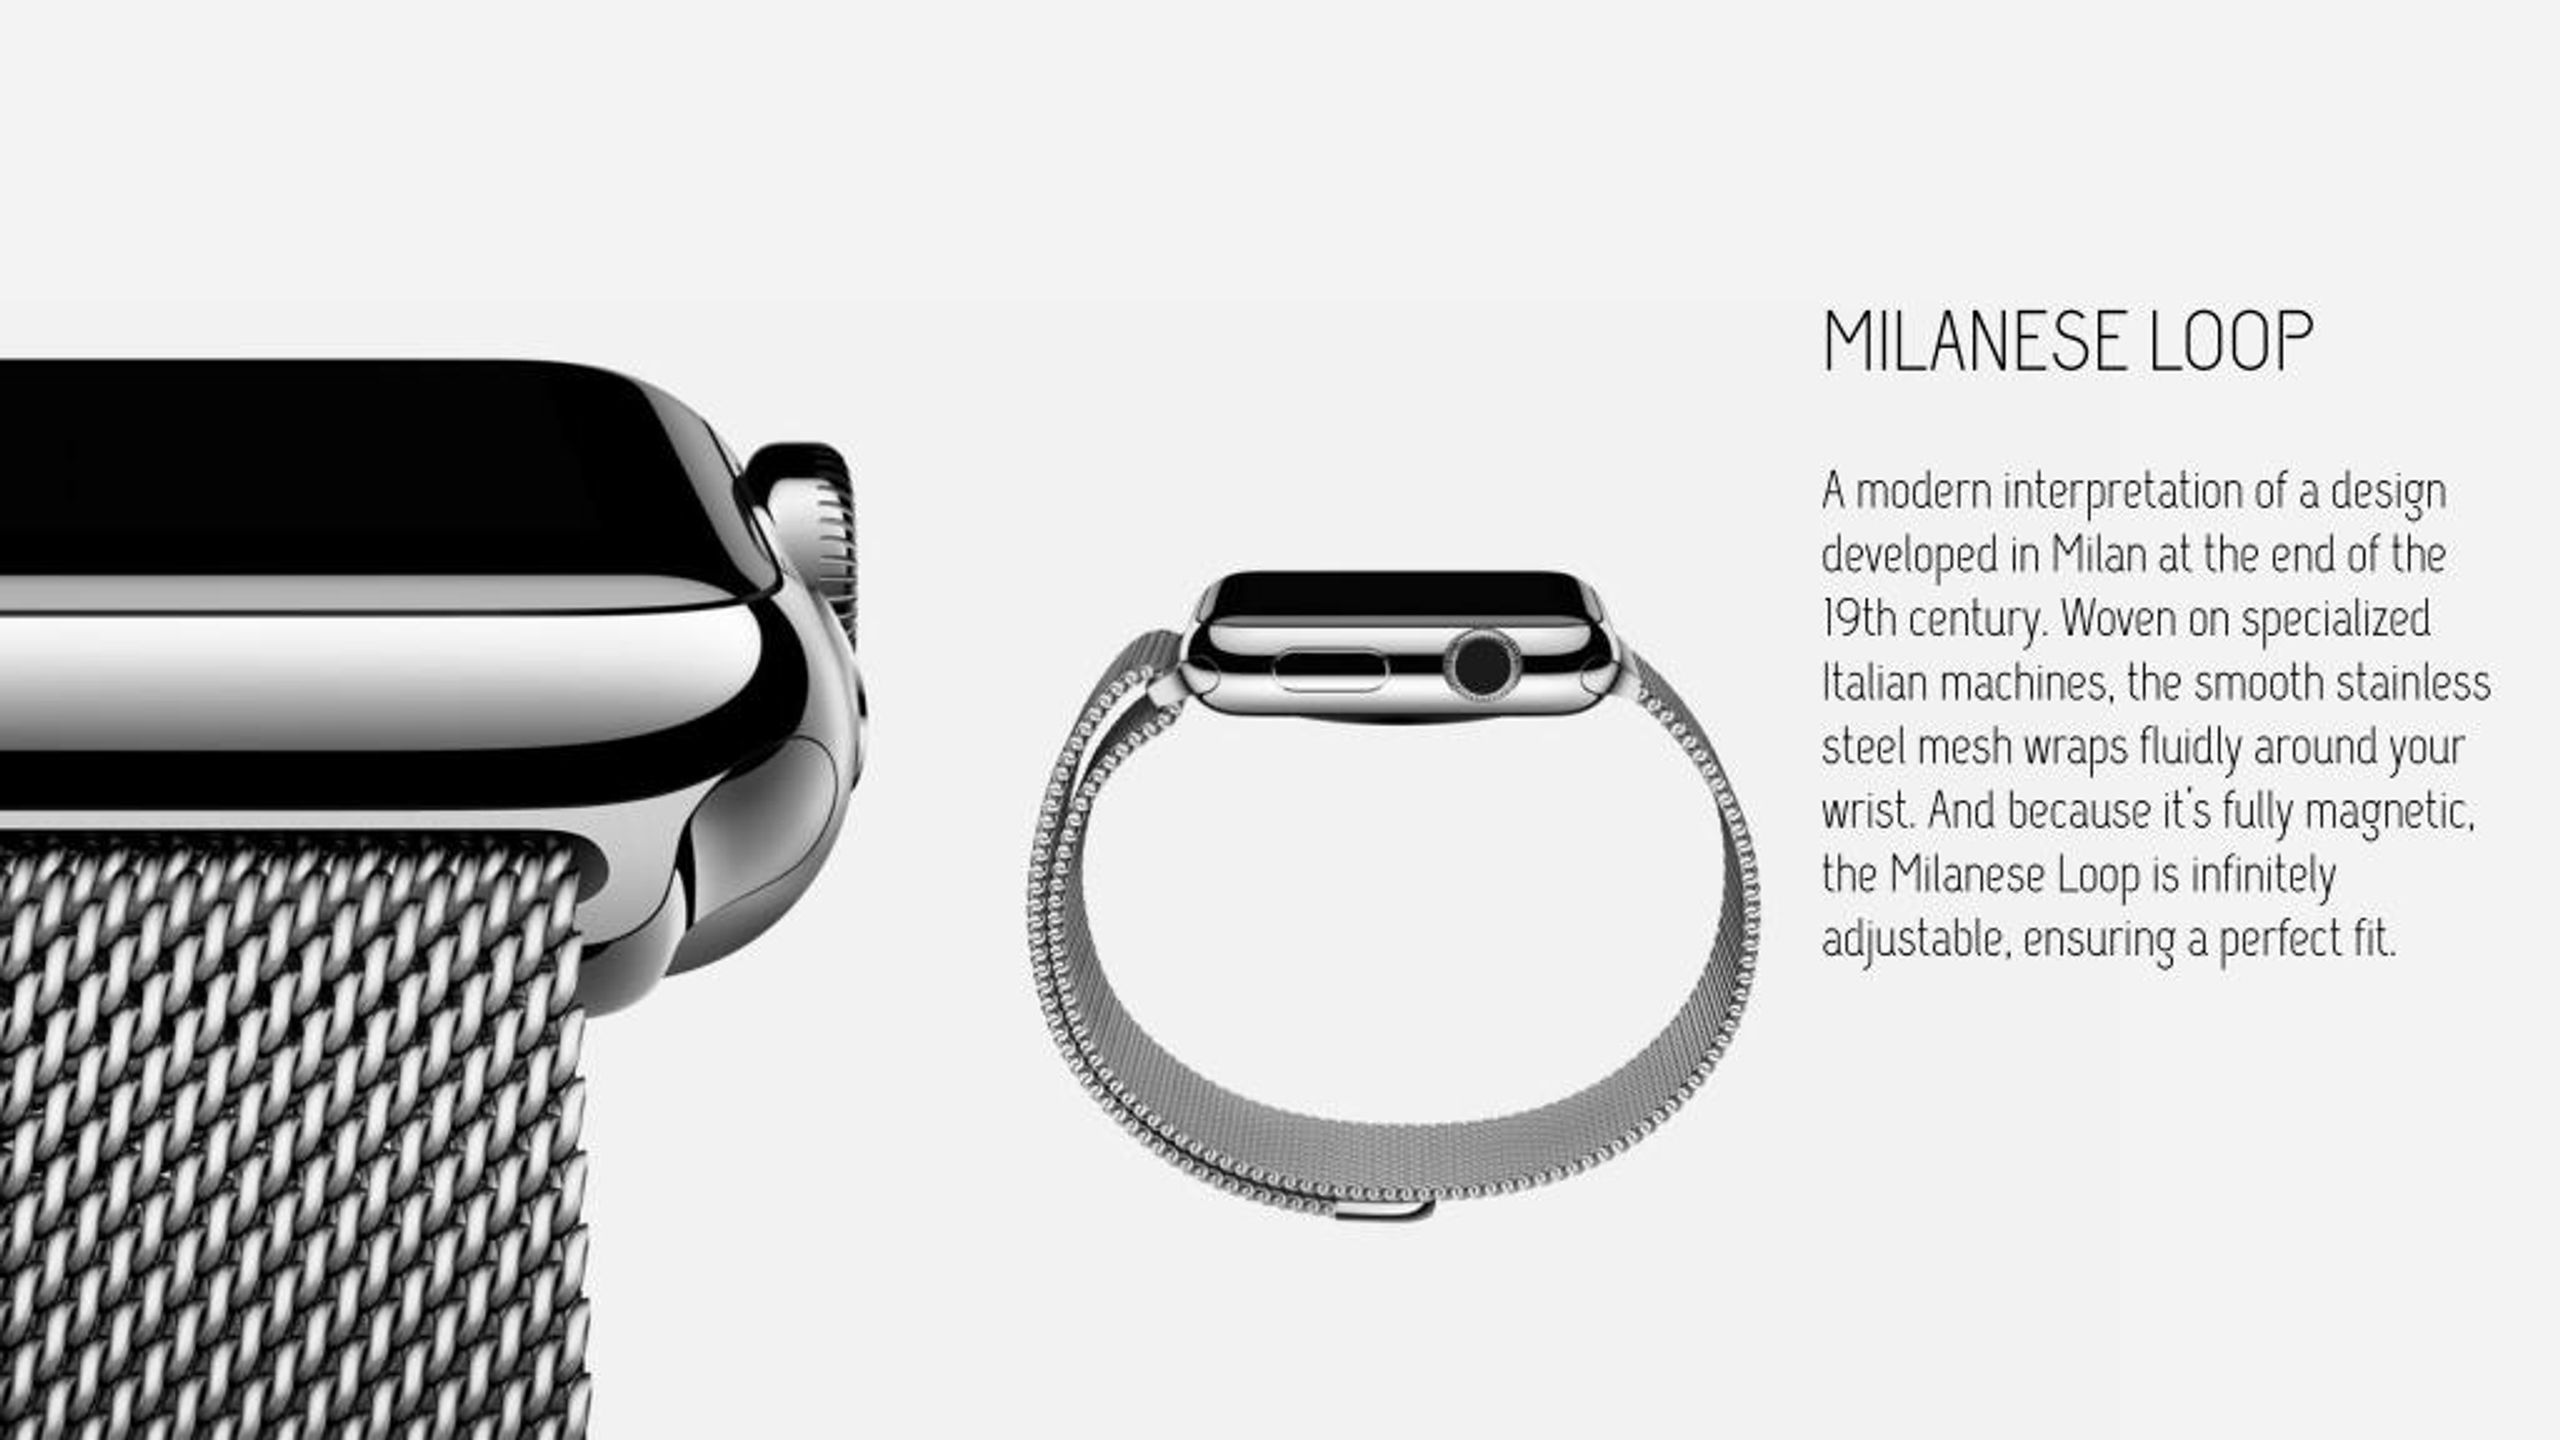 Series 7 41mm. Apple watch 8 Milanese loop. Apple watch 8 Stainless Steel. Apple watch Series 7, 45mm, Steel Milanese loop комплект. Milanese loop Black ремешок.